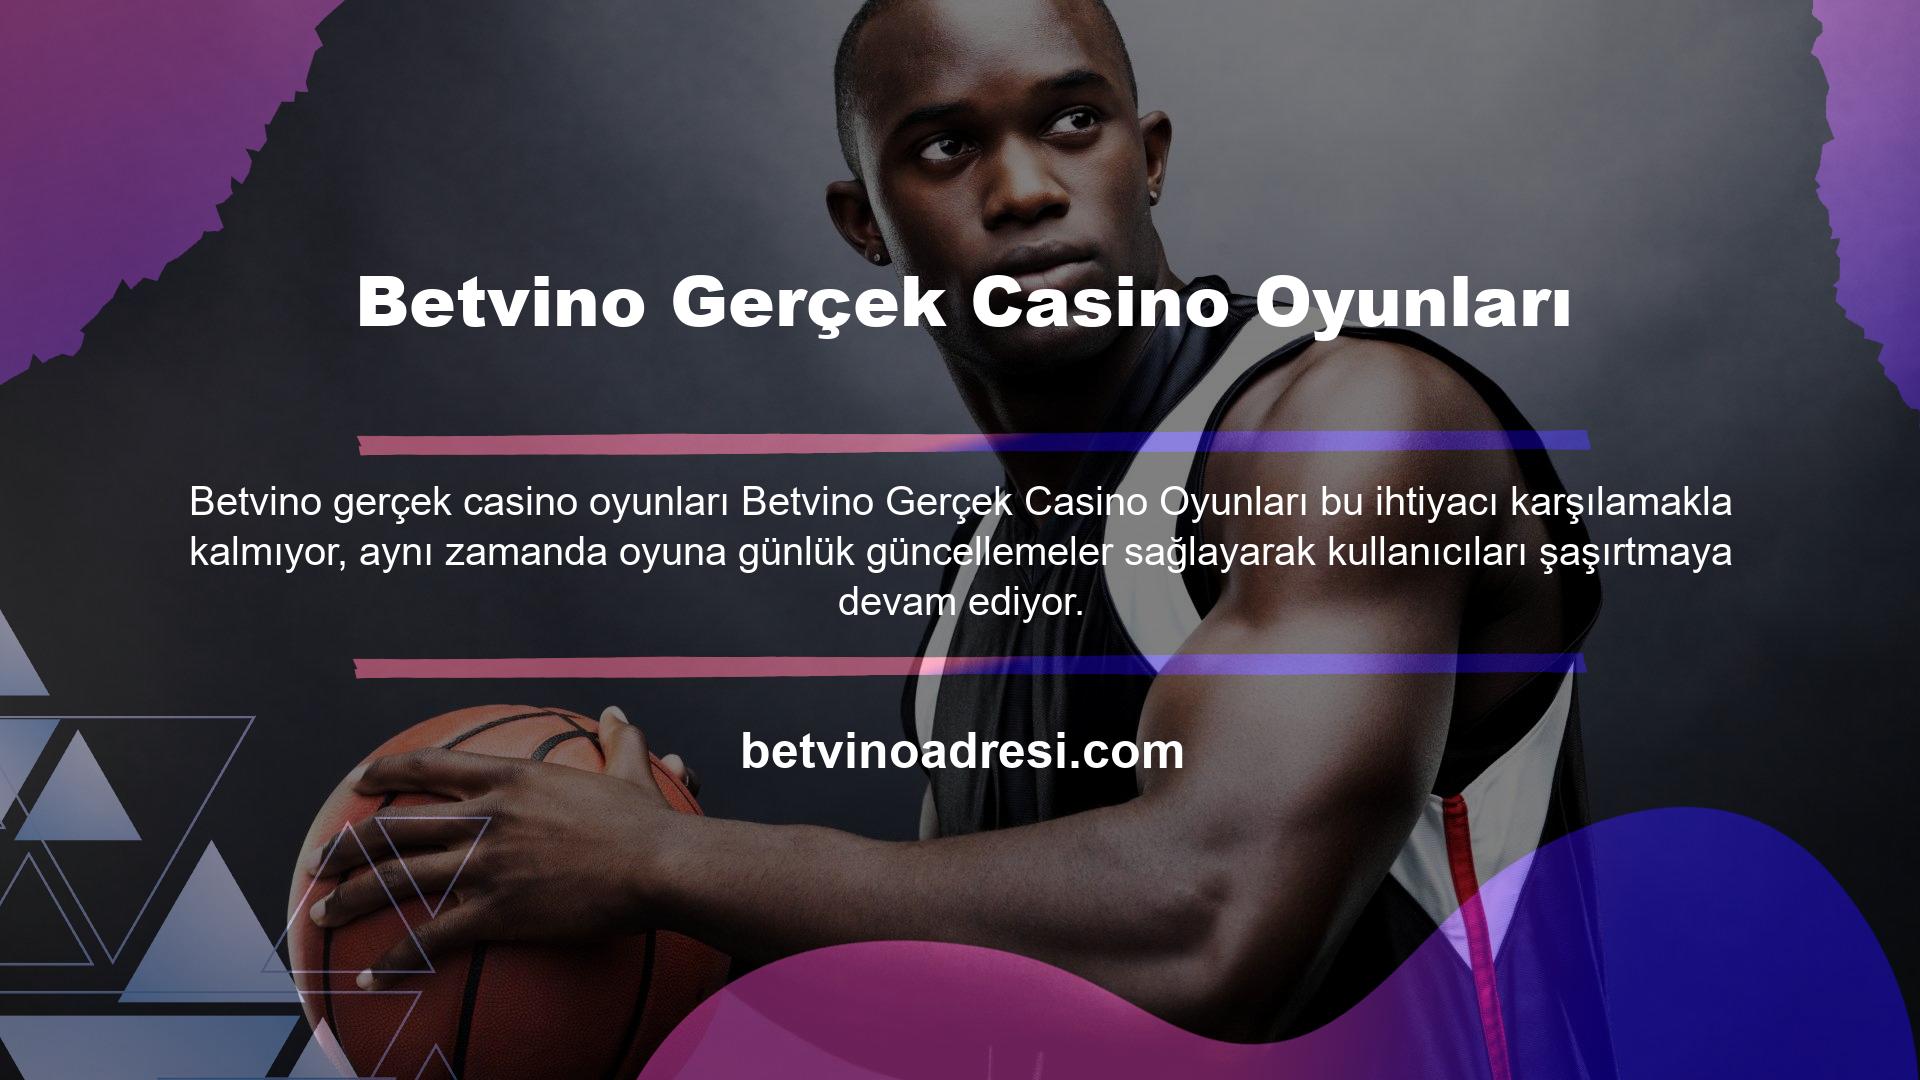 Betvino web sitesi piyasadaki en kapsamlı gerçek casino hizmetlerini sunarak her gün yüzlerce kullanıcıya gelir sağlıyor